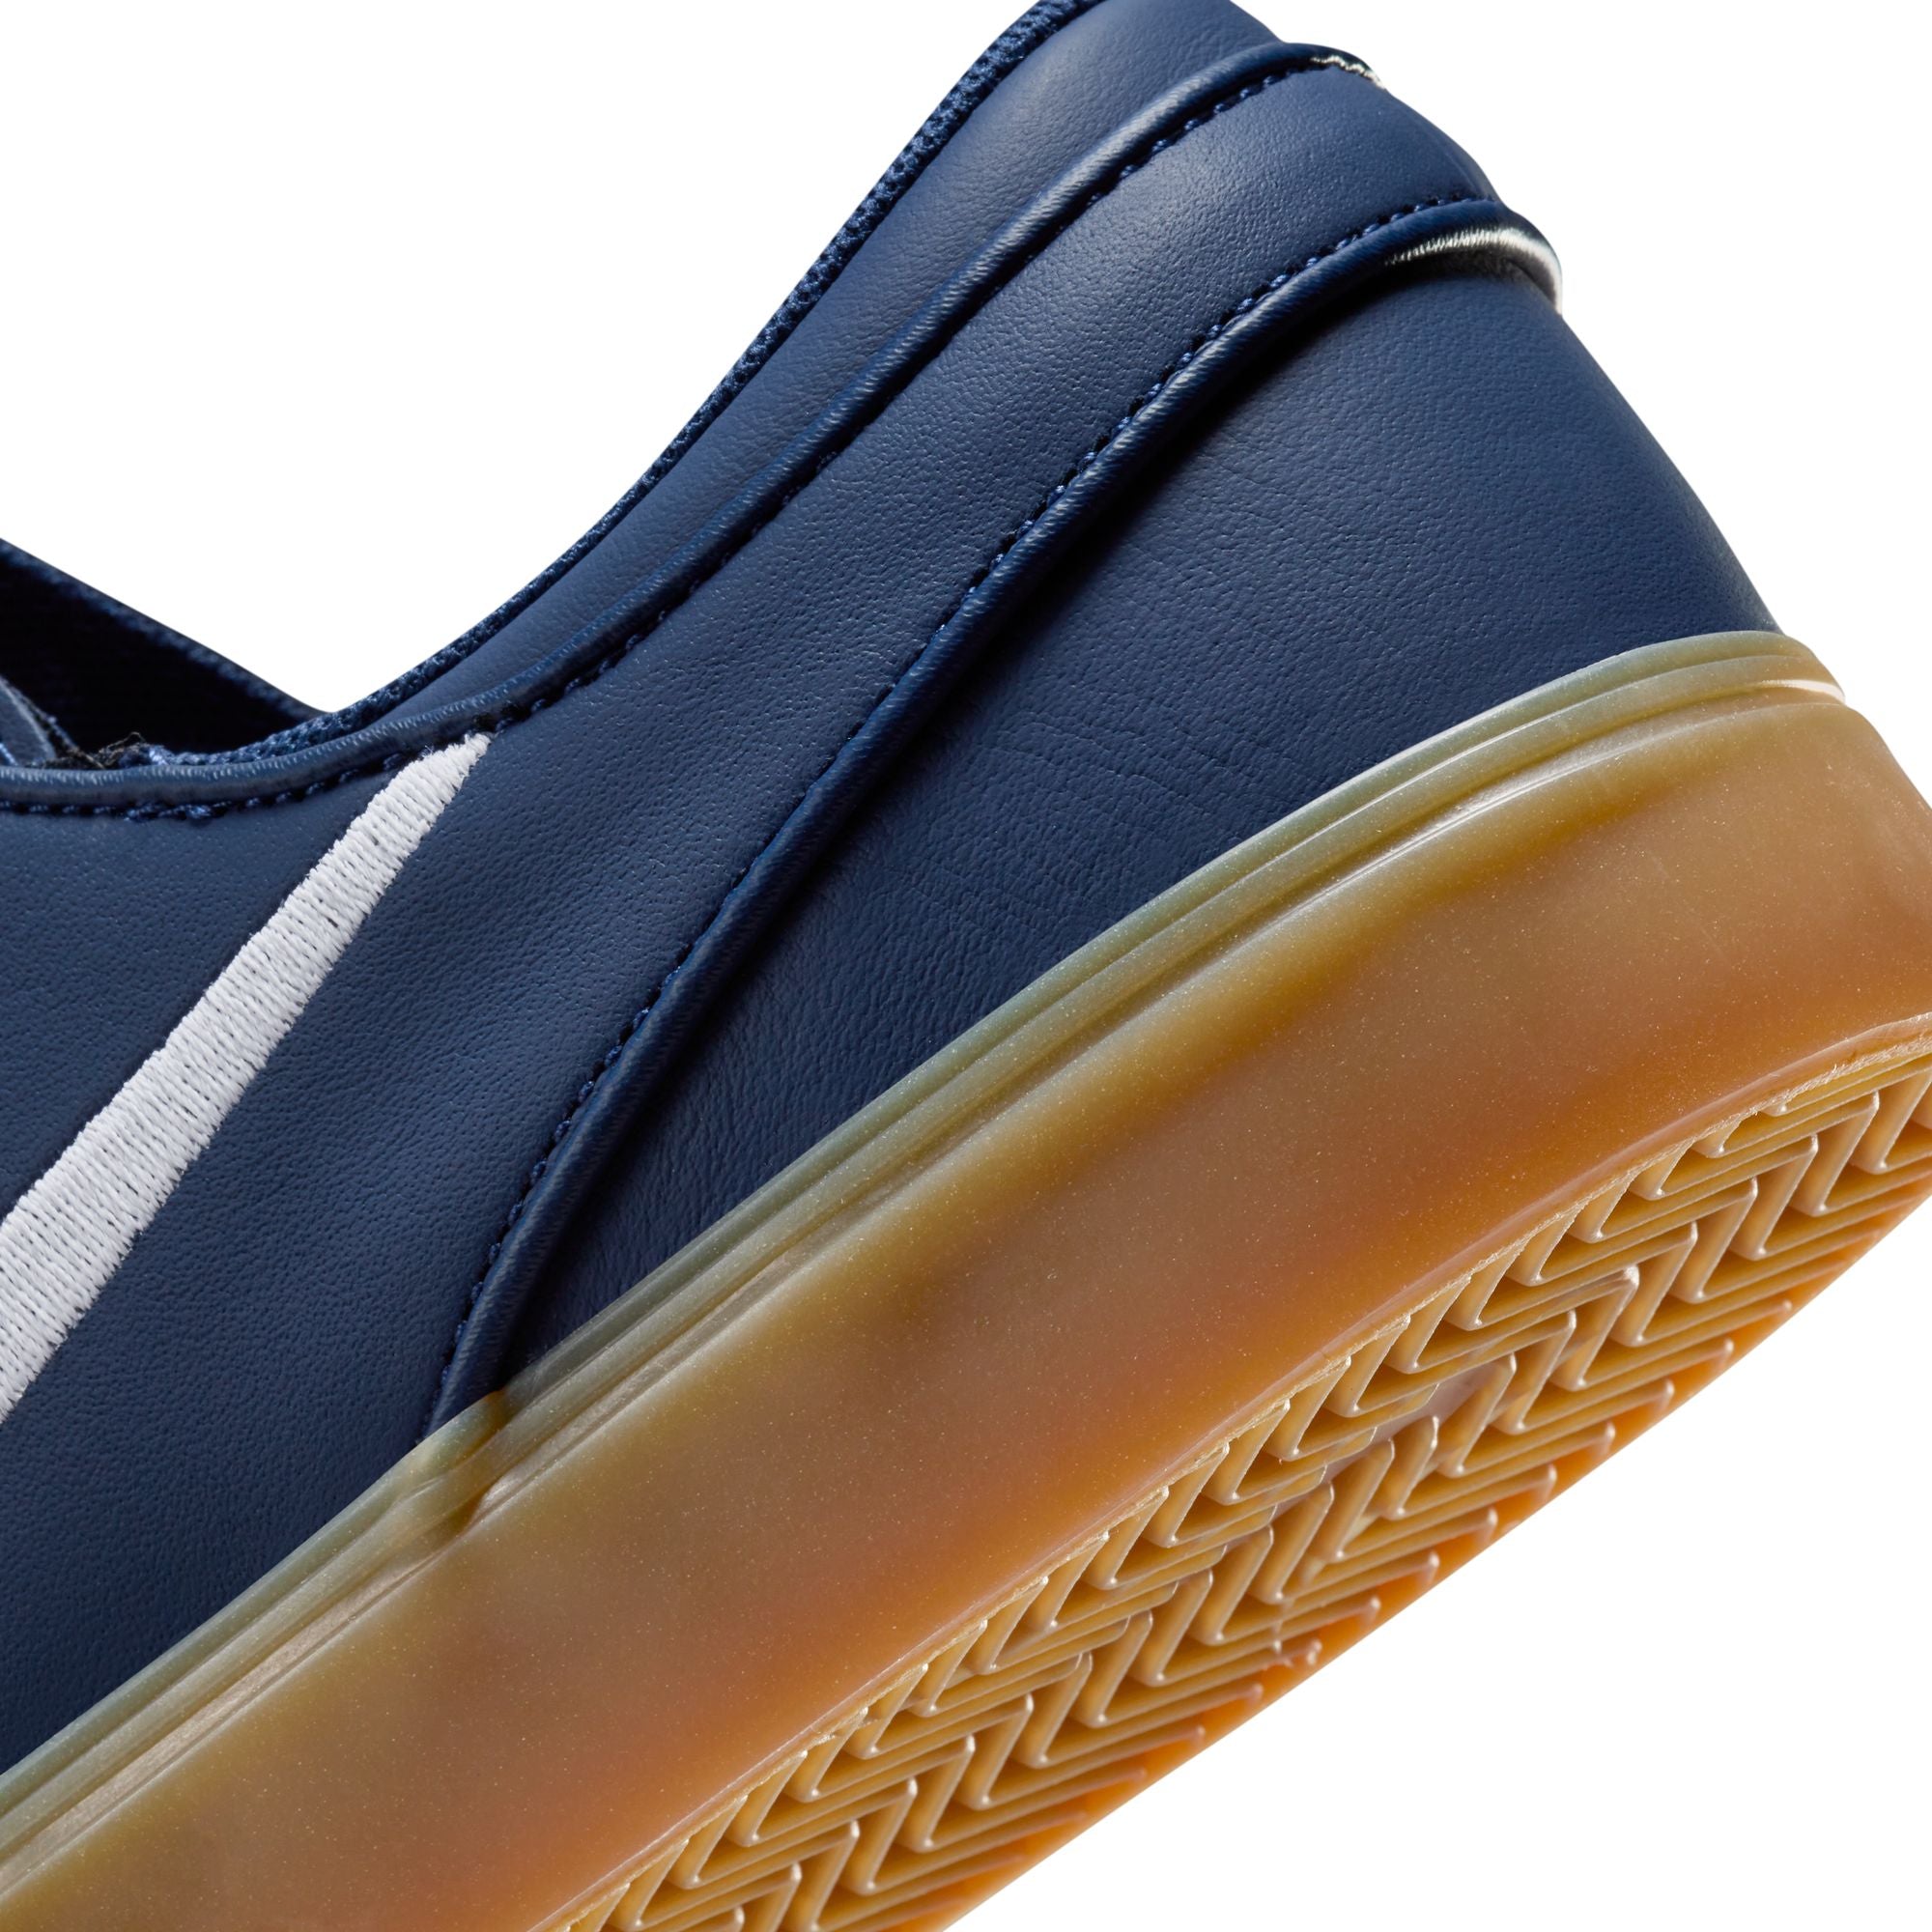 Nike SB ISO Janoski OG+ Shoes - Navy/White-Gum-Light Brown